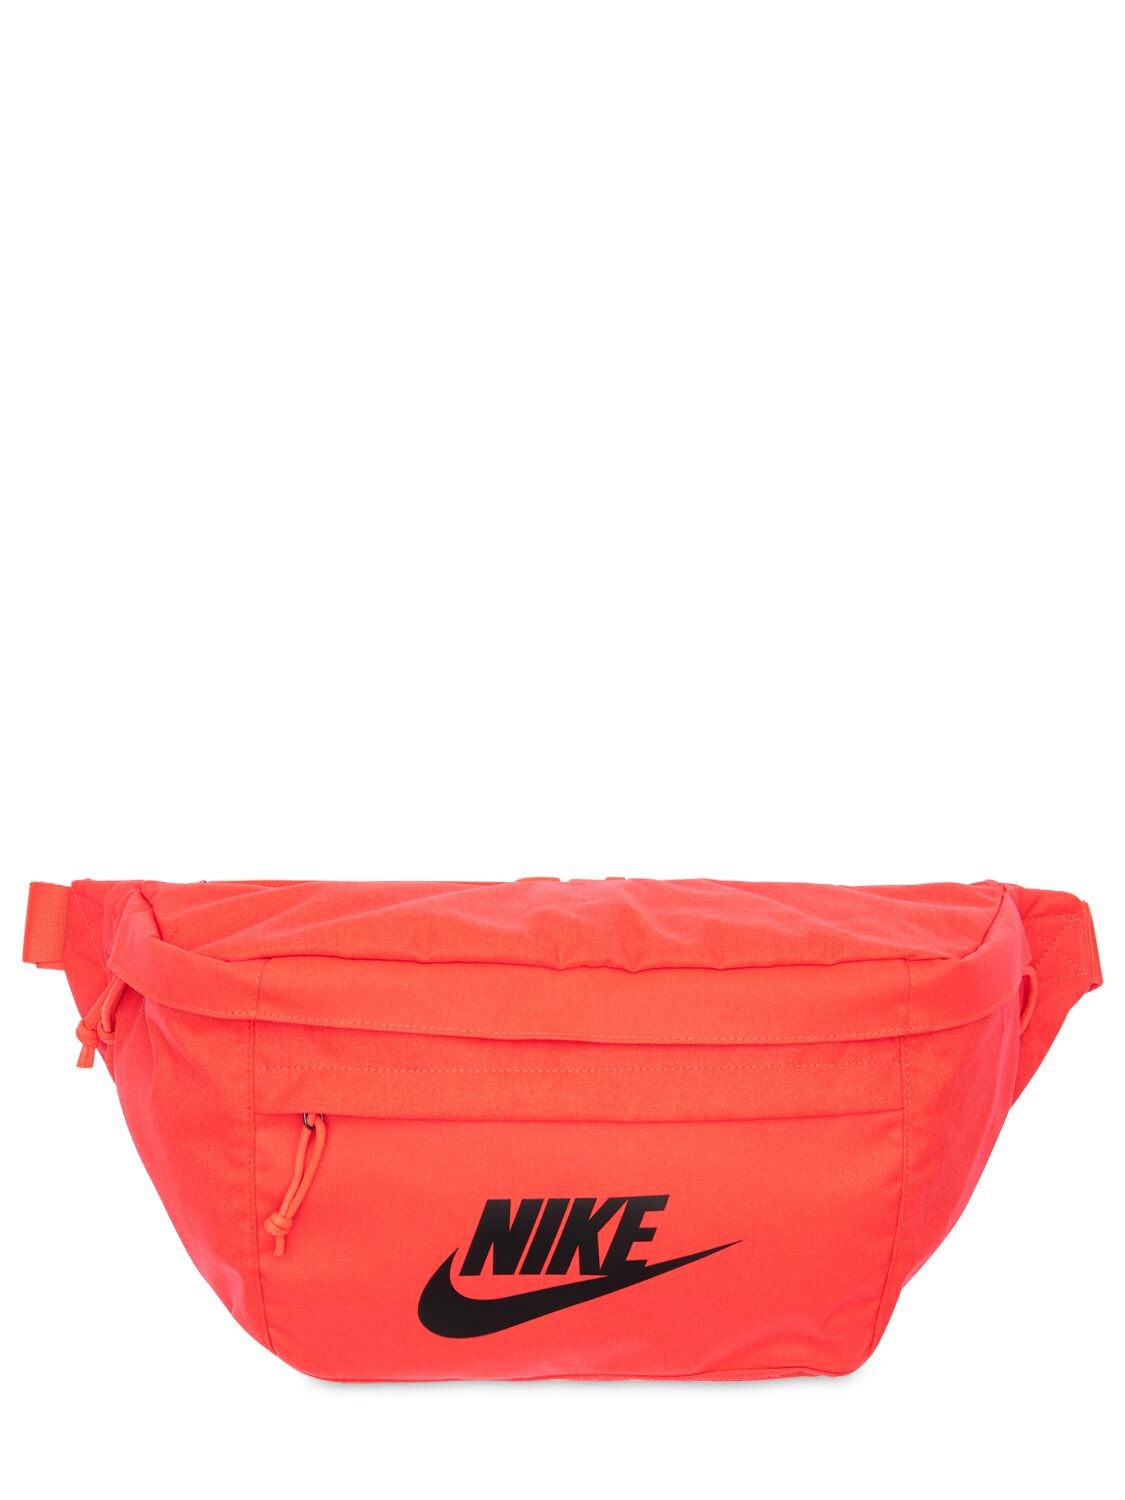 Buy Nike Belt Bag for Mens at Goxip 